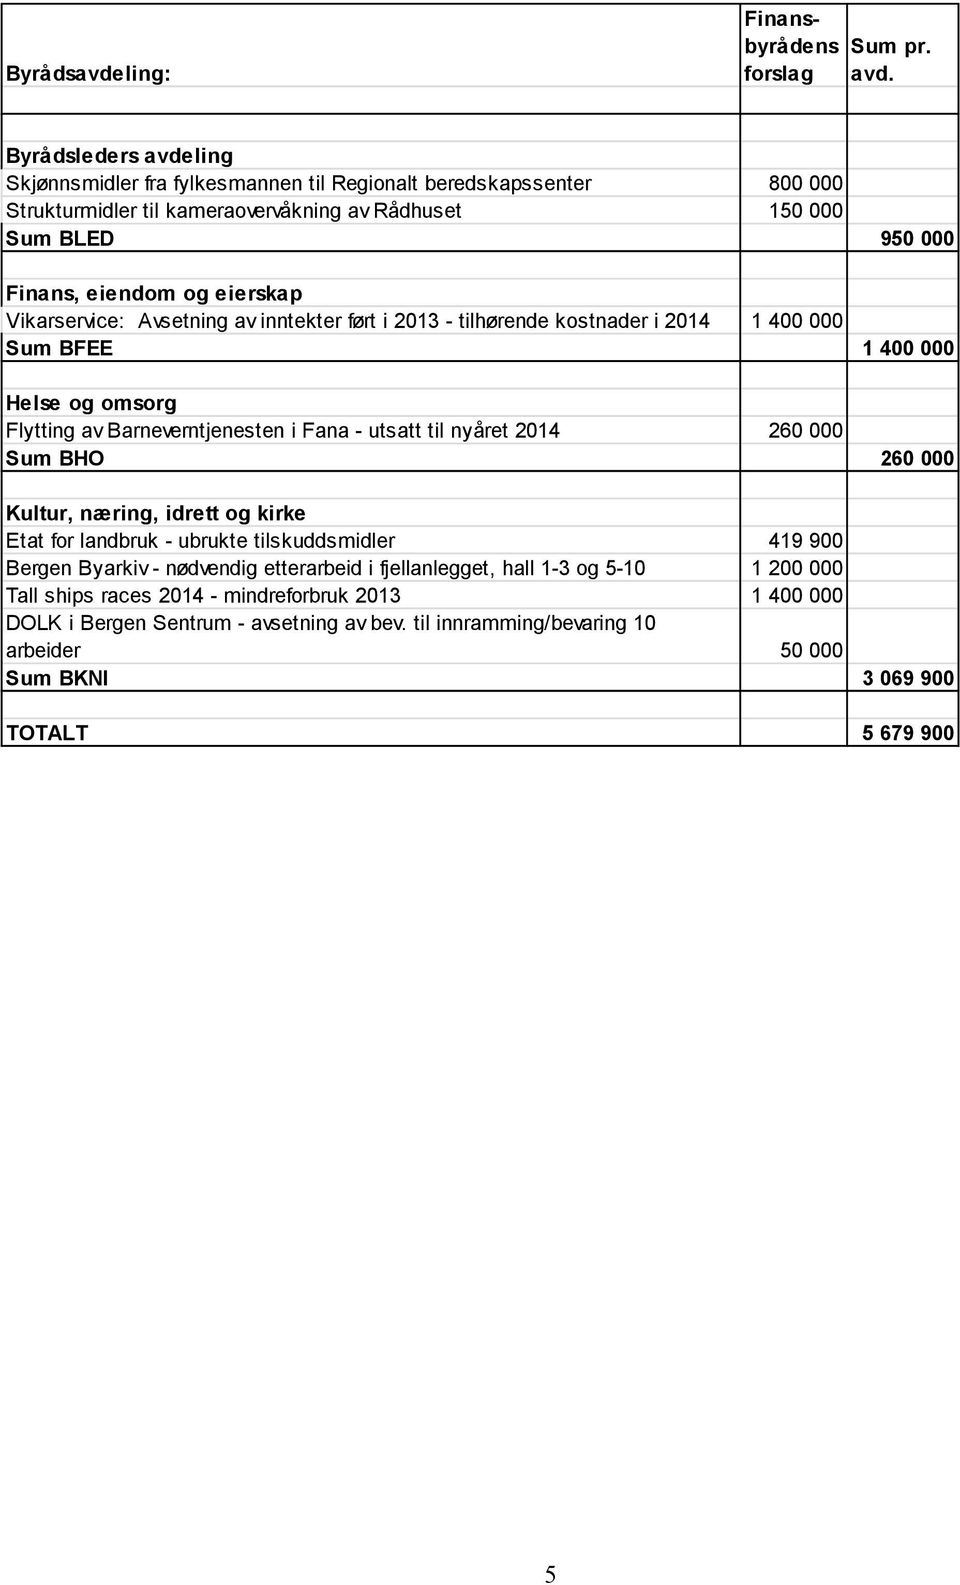 Vikarservice: Avsetning av inntekter ført i 2013 - tilhørende kostnader i 2014 1 400 000 Sum BFEE 1 400 000 Helse og omsorg Flytting av Barneverntjenesten i Fana - utsatt til nyåret 2014 260 000 Sum